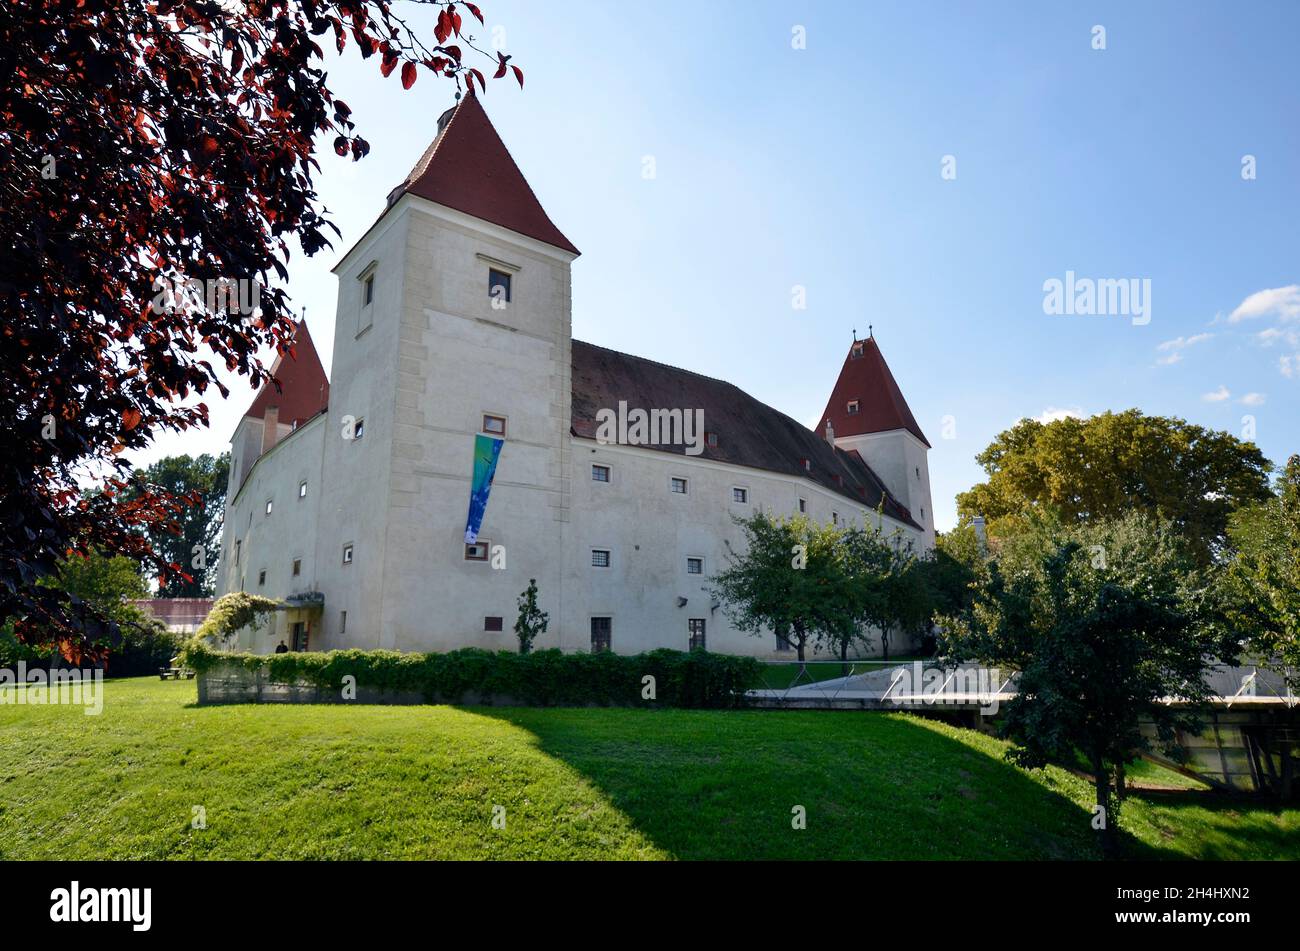 Austria, Orth castillo en la Baja Austria, antiguo castillo amarrado que ahora se utiliza como museo y centro de información del parque nacional Donau-Auen Foto de stock